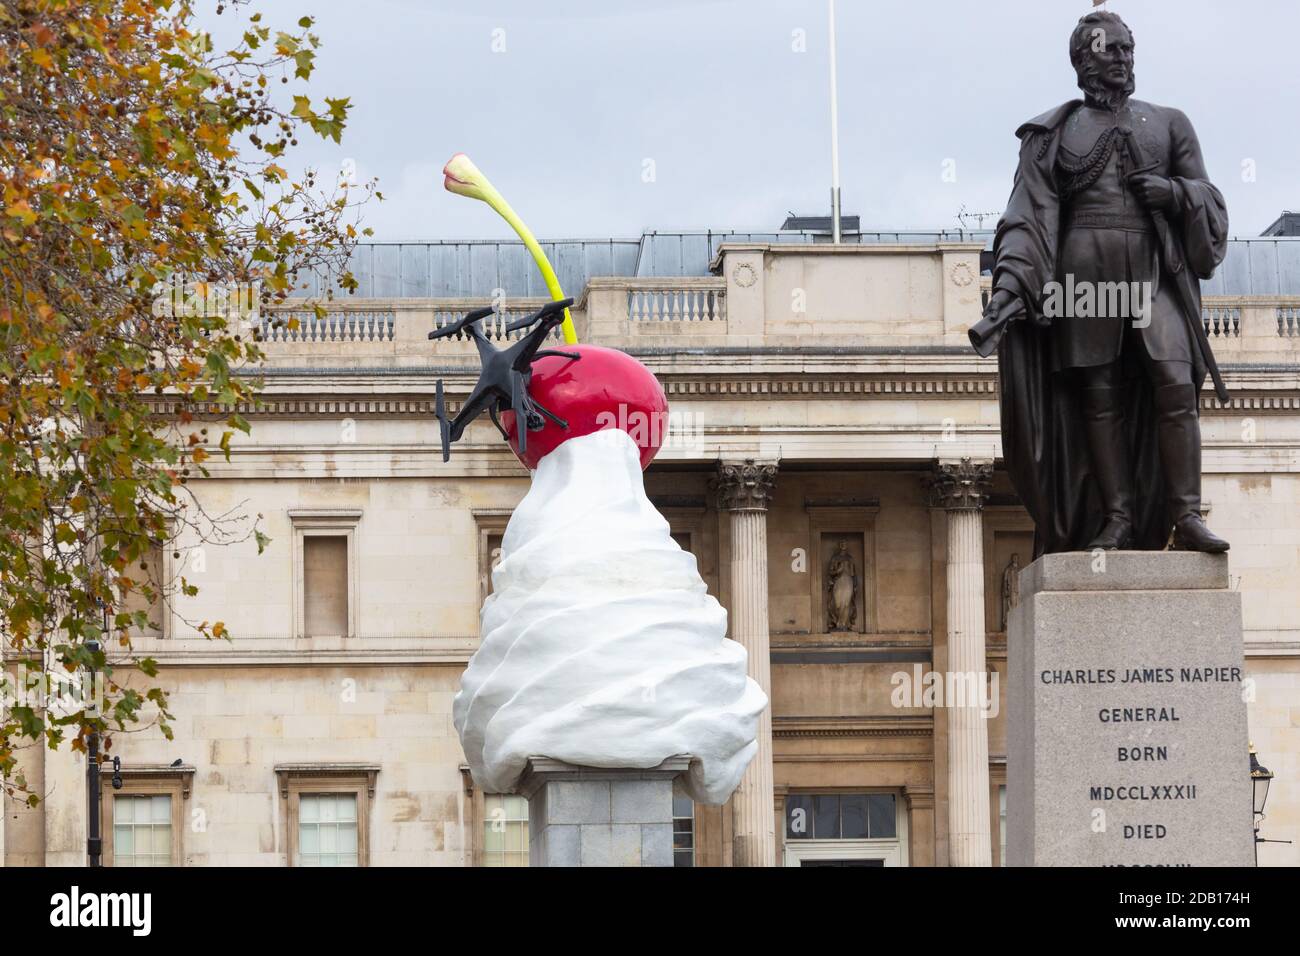 Tourbillon de la sculpture crème, la fin par l'artiste britannique Heather Phillipson, Trafalgar Square Fourth Plinth, londres, royaume-uni Banque D'Images